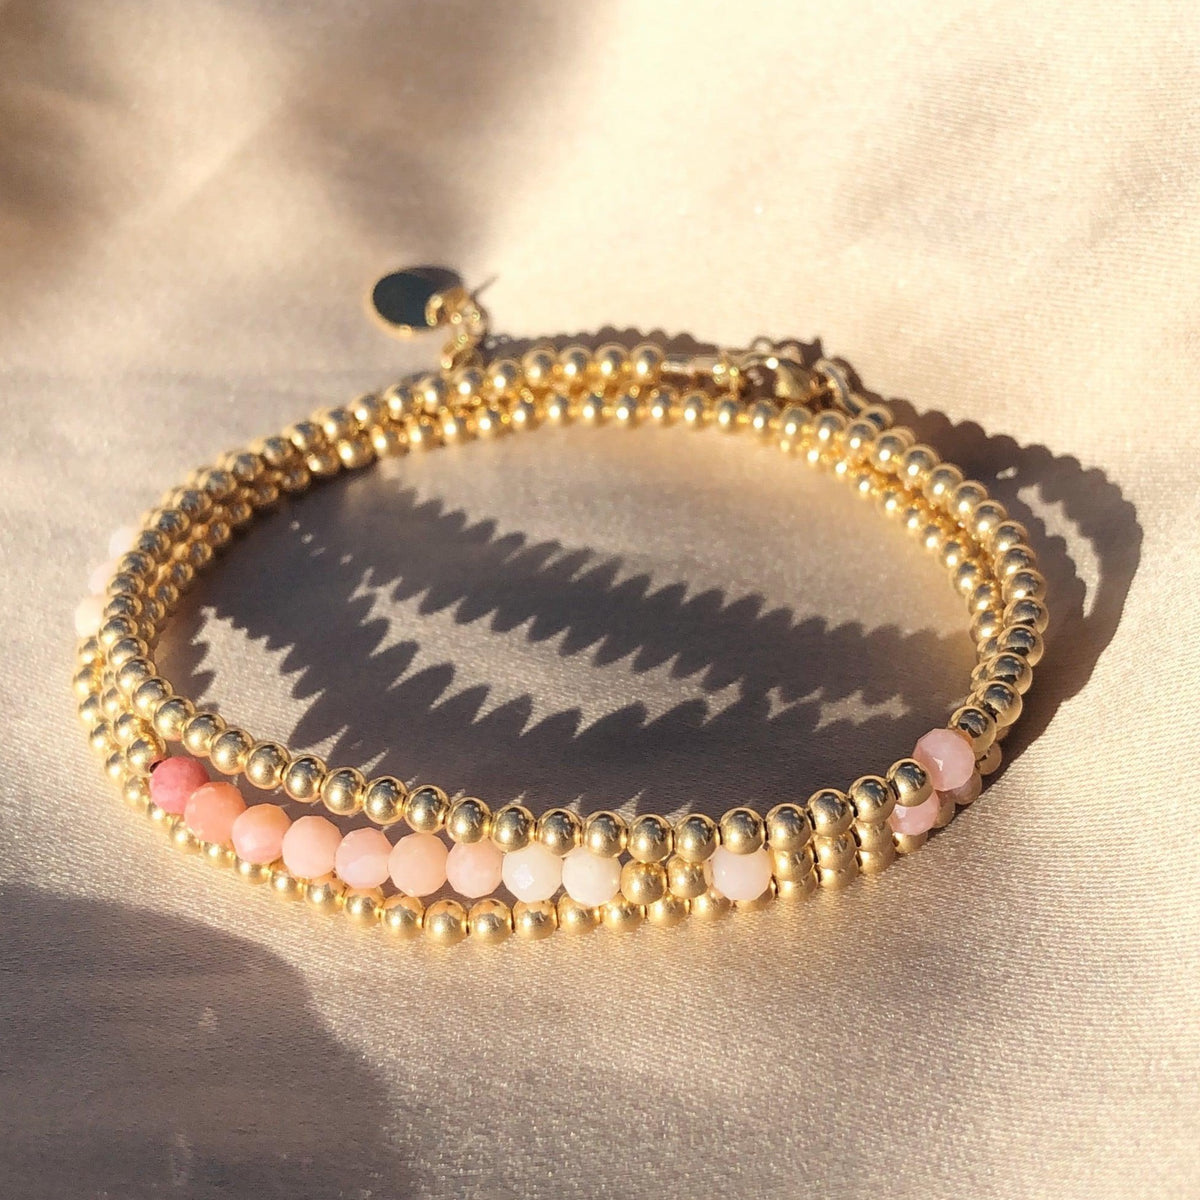 14K Gold Filled Wrap Bracelet with Gemstones